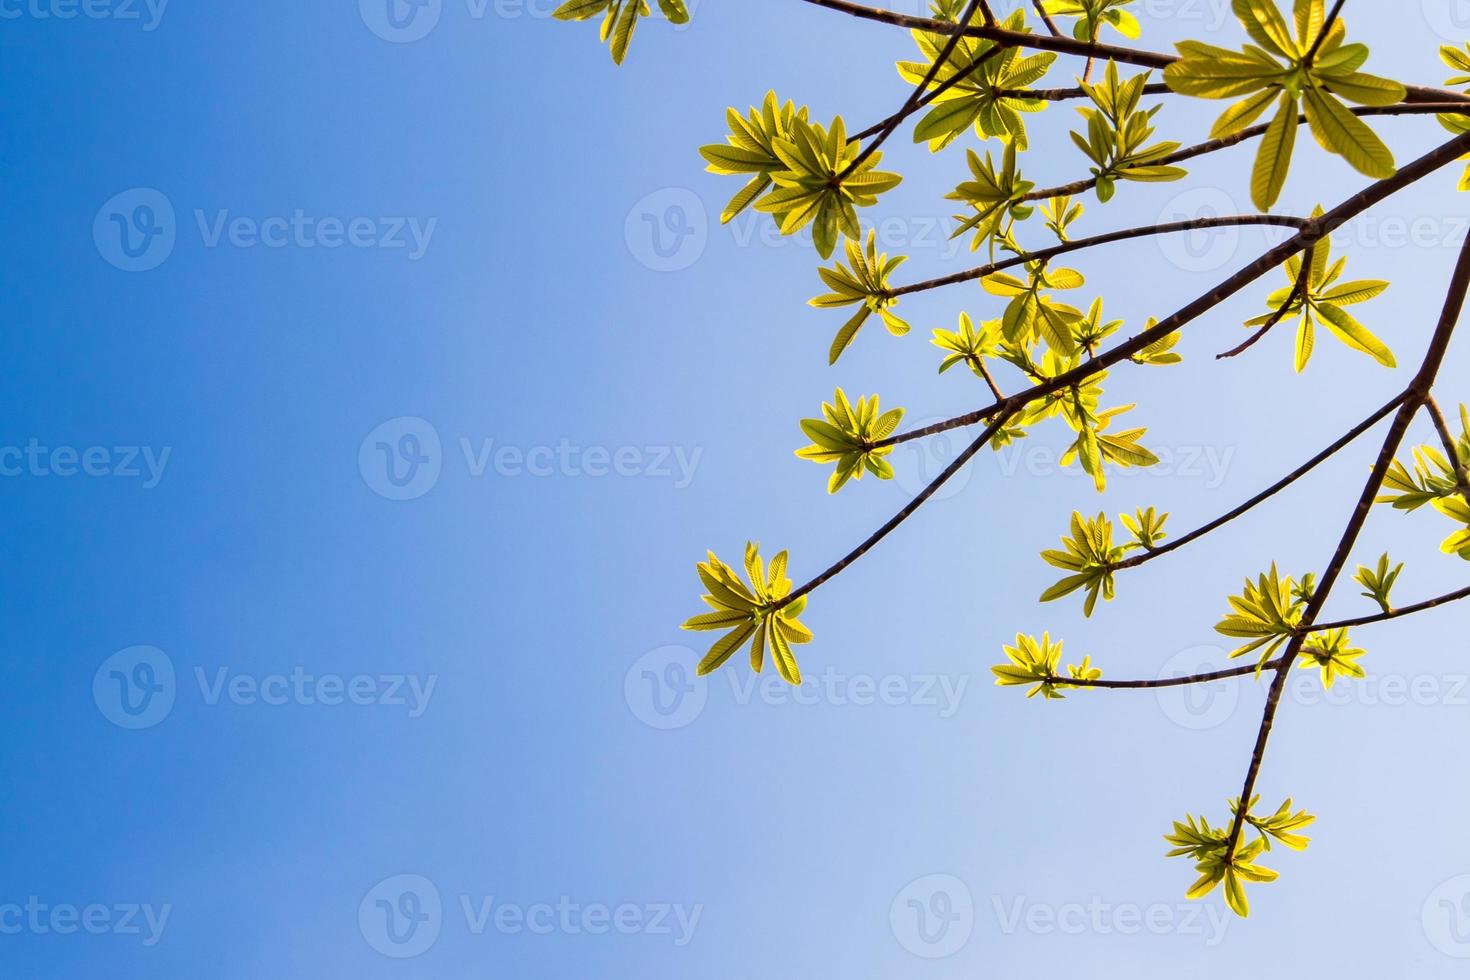 friskhet lämnar av kanonkul träd på blå himmel och solljus bakgrund foto